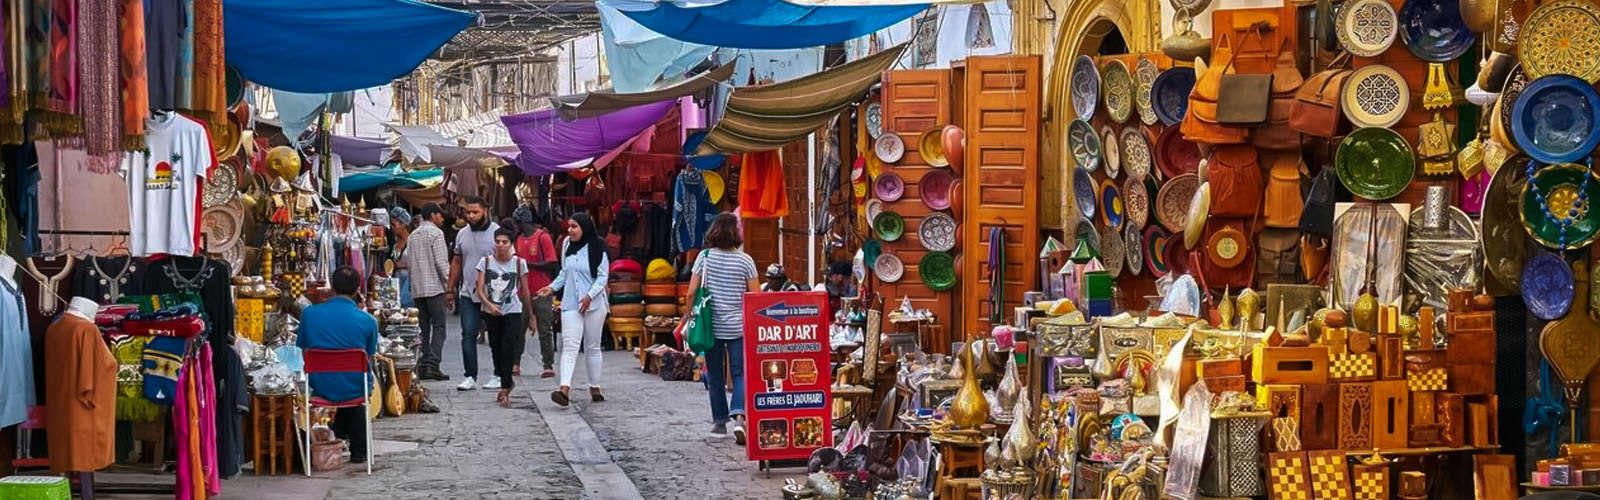 Medina In Morocco